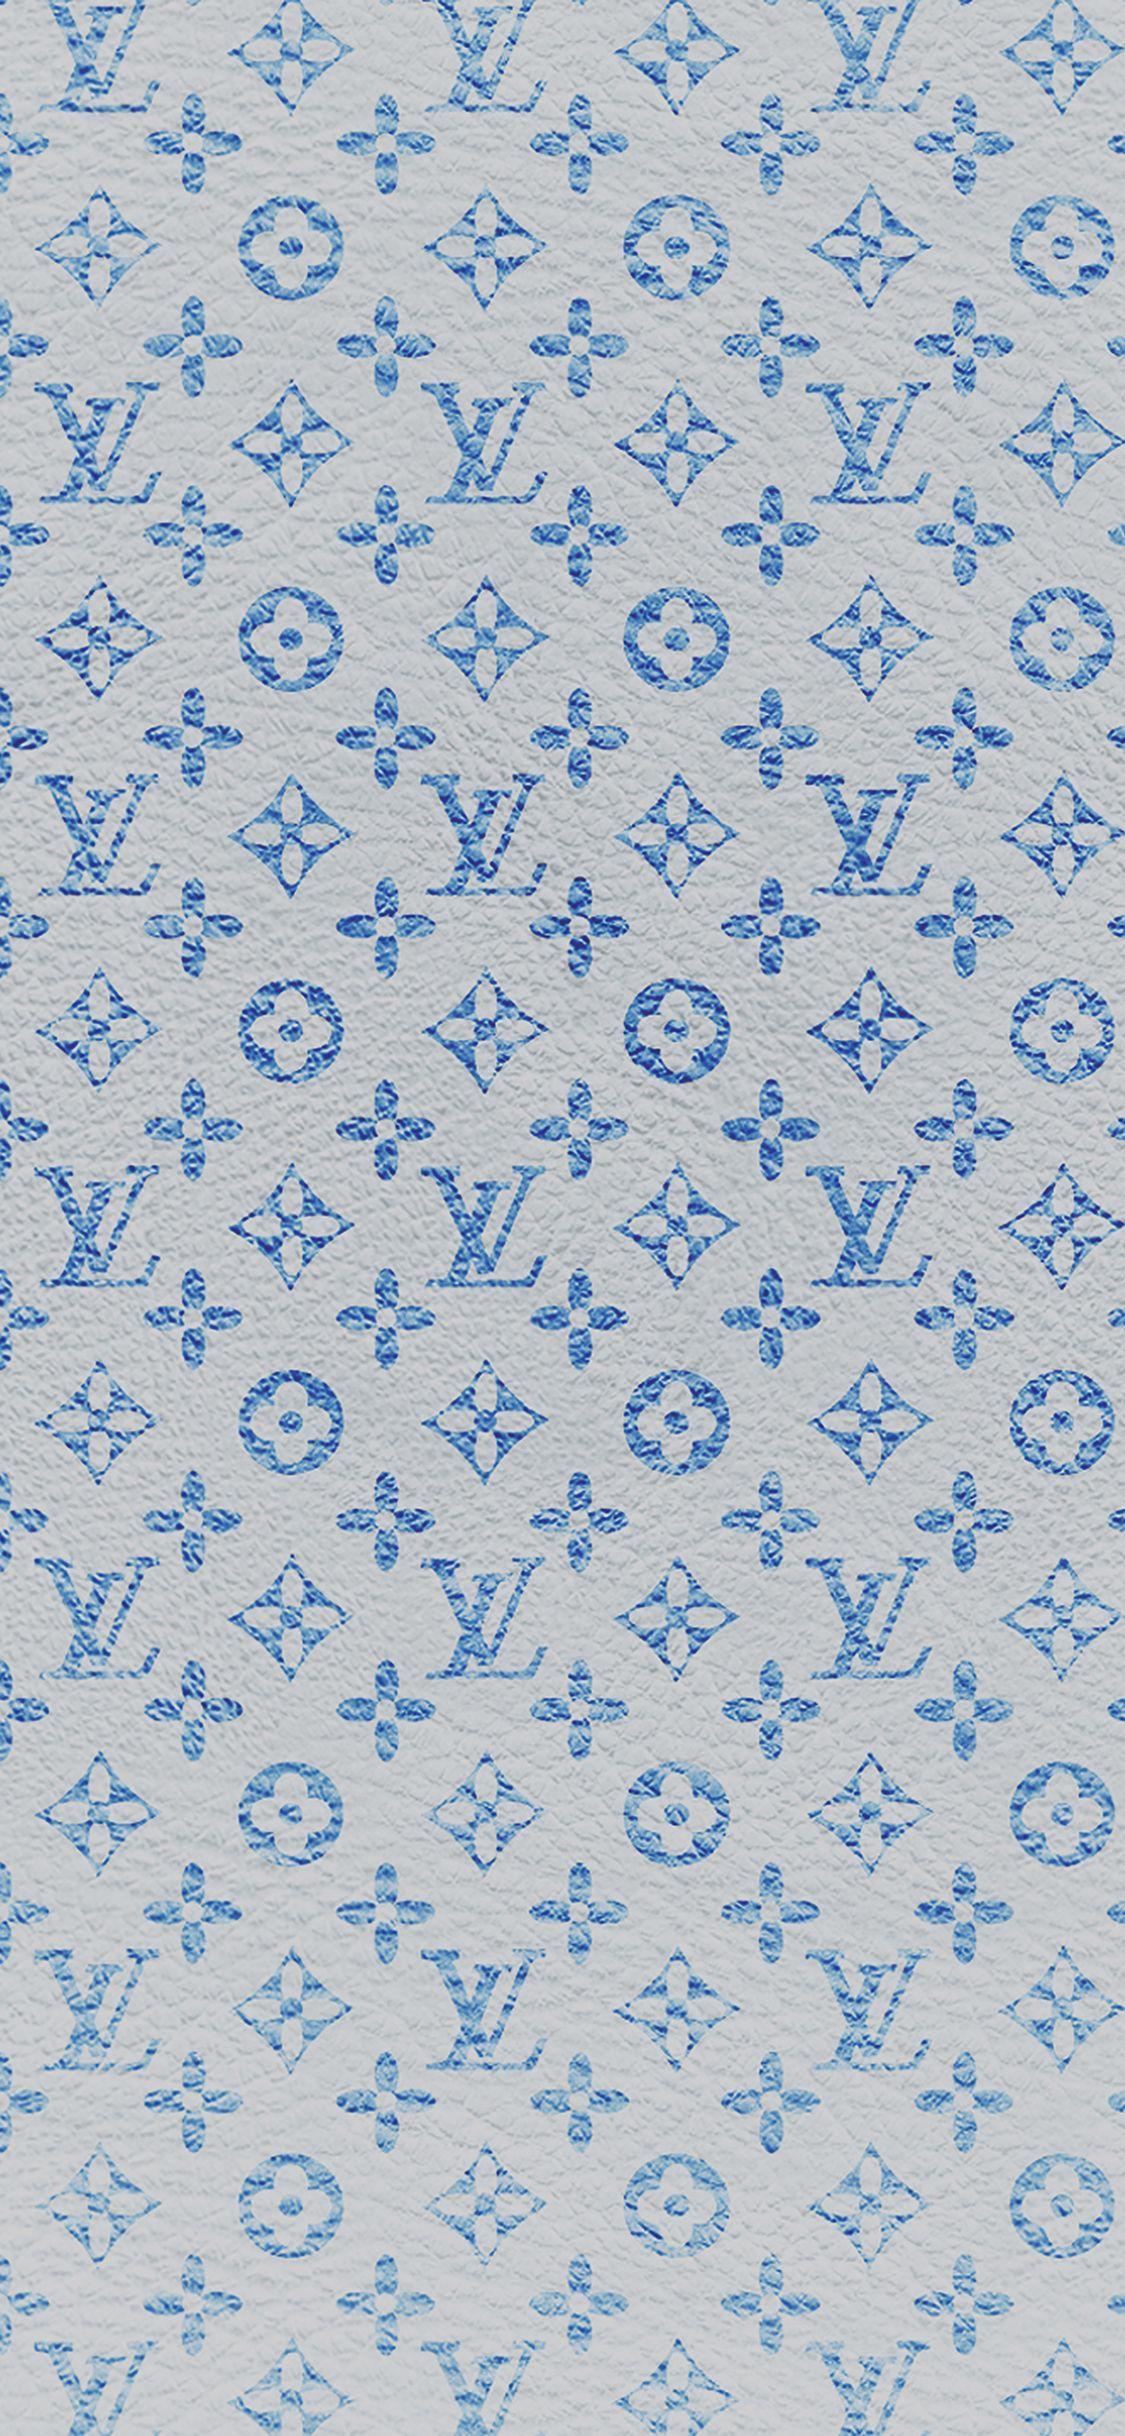 Louis Vuitton Print #iPad #Air #Wallpaper